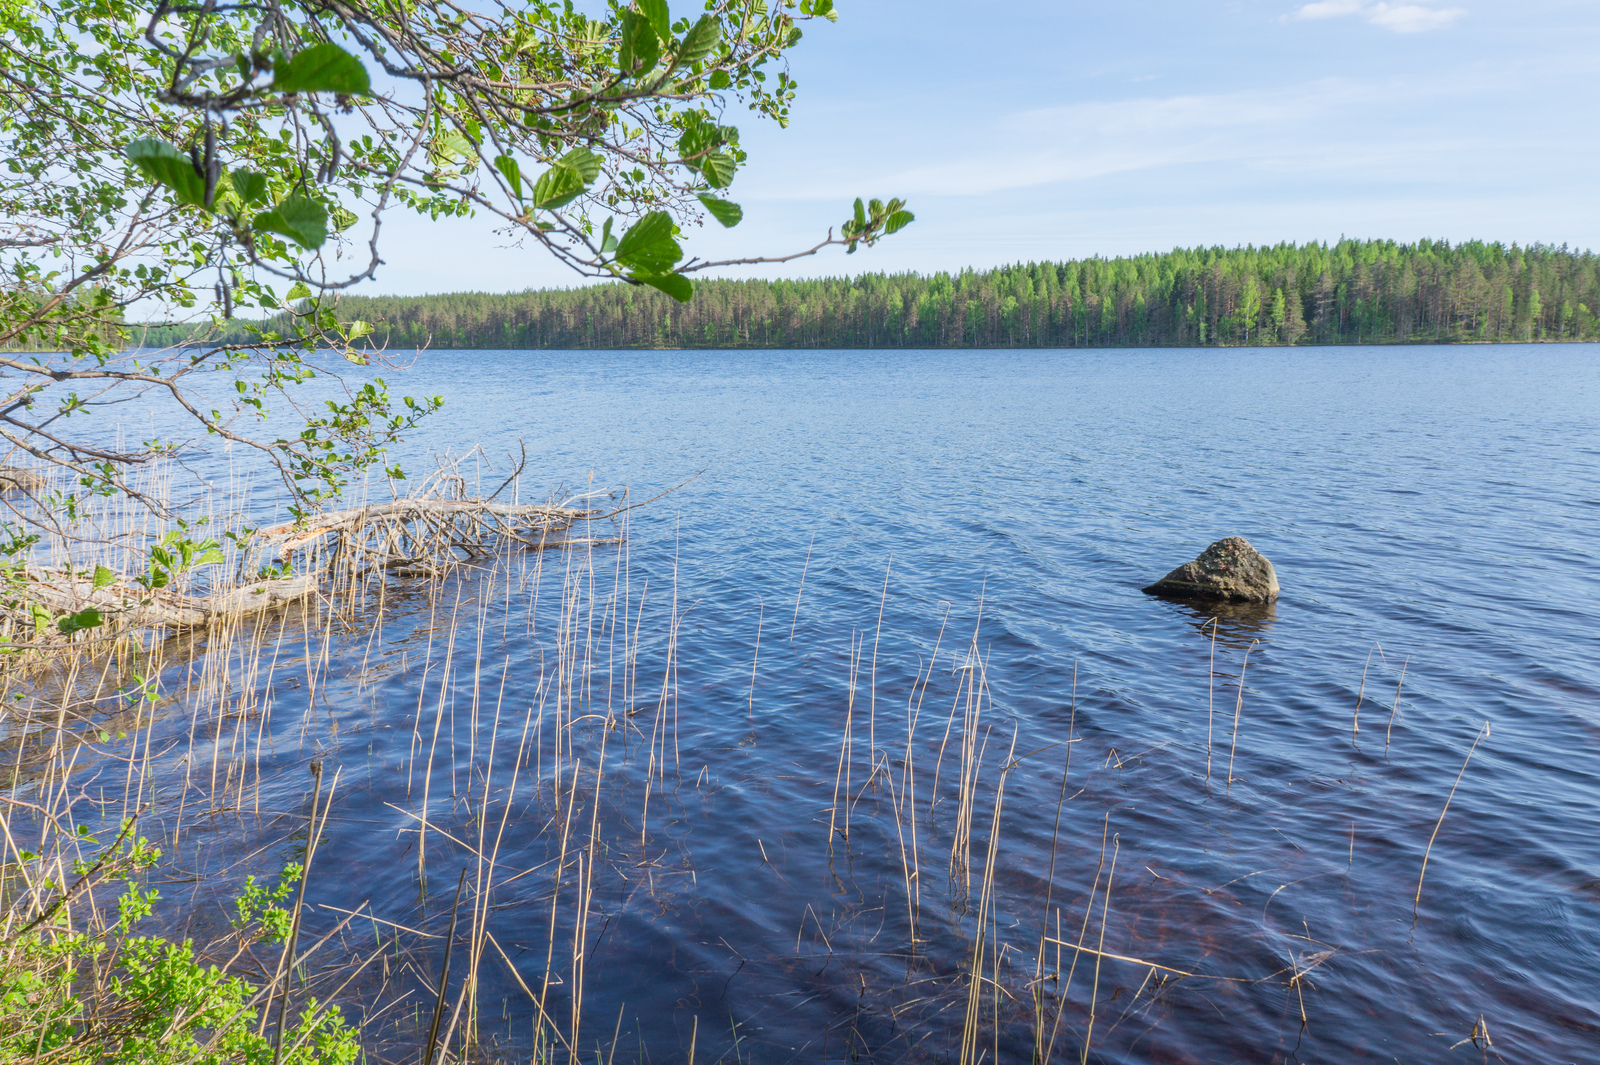 Lepän oksat kurkottavat kesäisen järvimaiseman ylle. Rantavedessä on kivi ja vesikasveja.